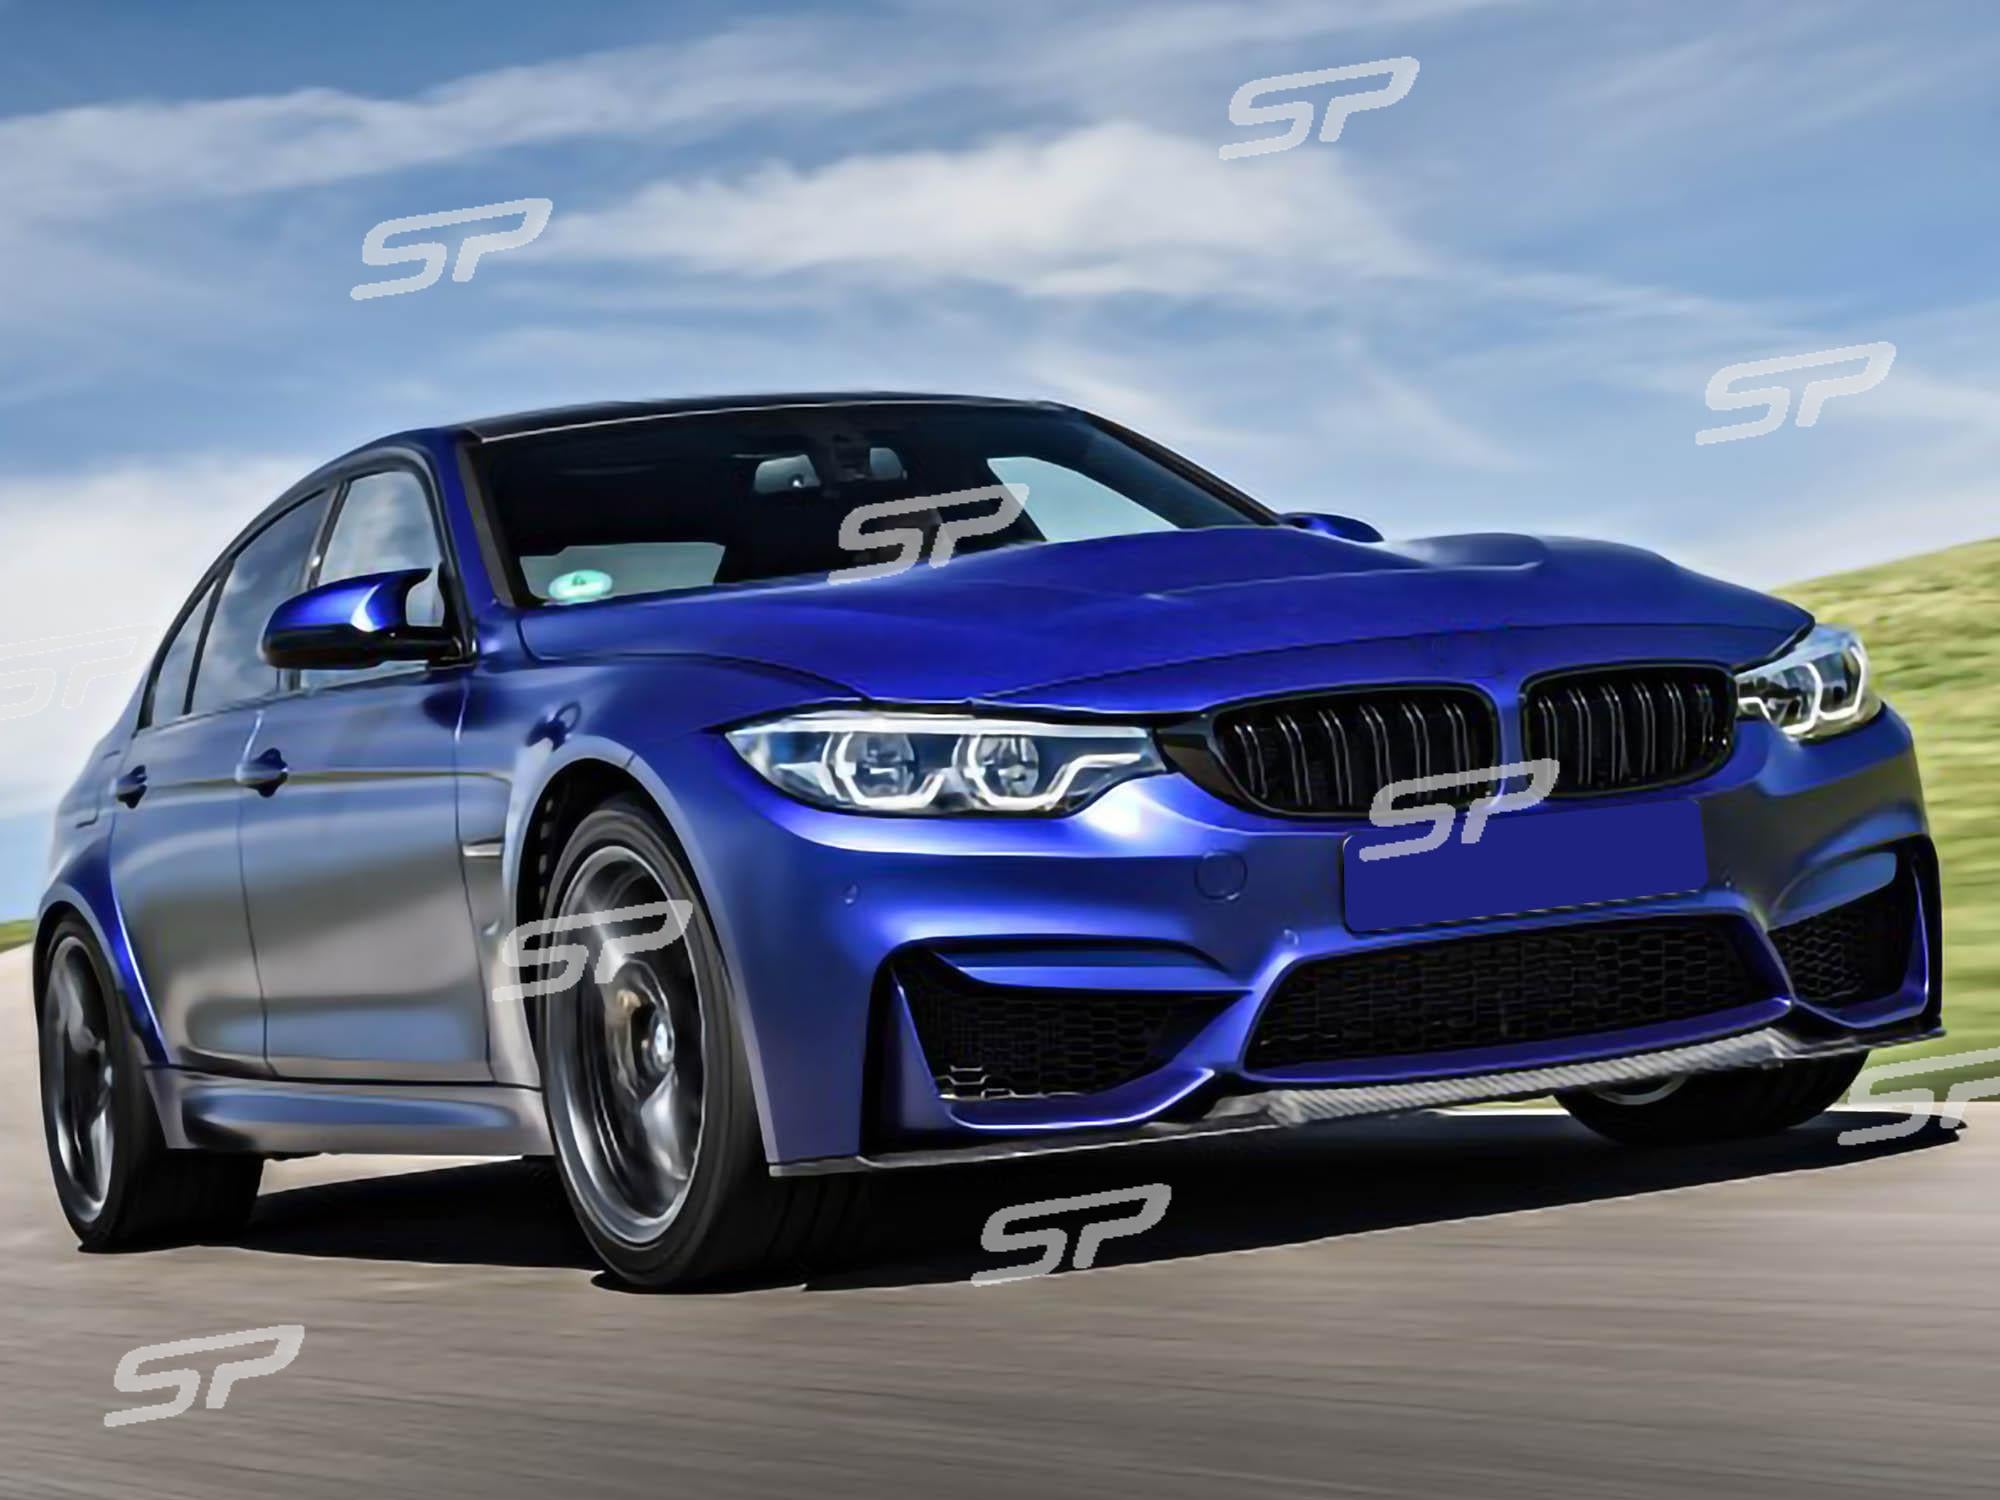 Diffusor Heckdiffusor Carbon Look V Style für BMW M3 F80 M4 F82 F83 2015-2020 Sales